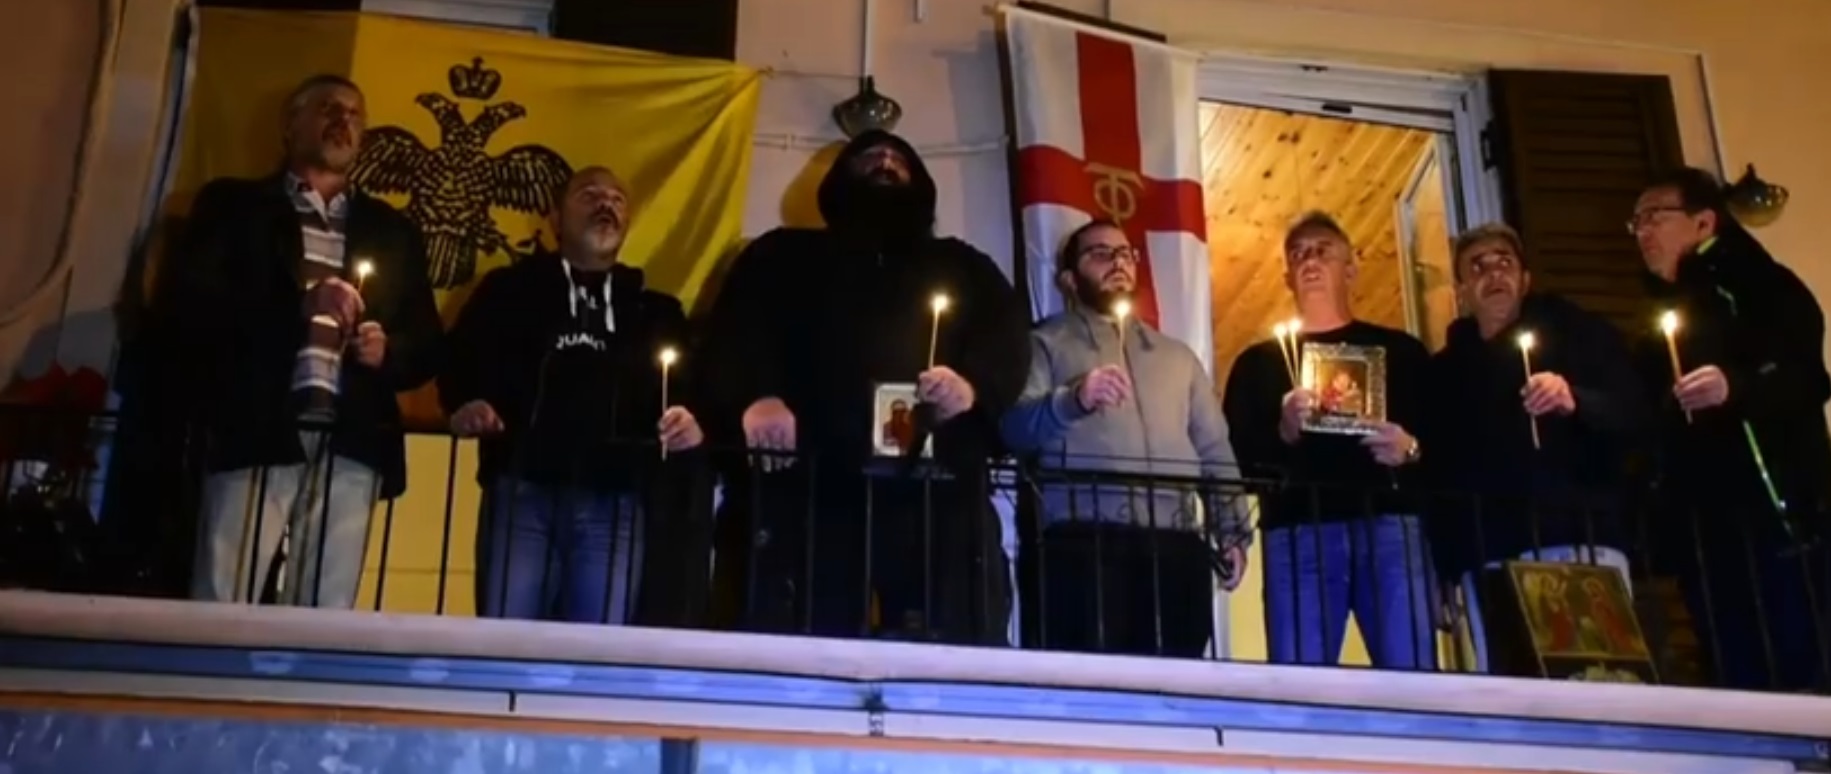 Ναύπλιο: Βγήκαν στα μπαλκόνια και έψαλαν τον Ακάθιστο ύμνο